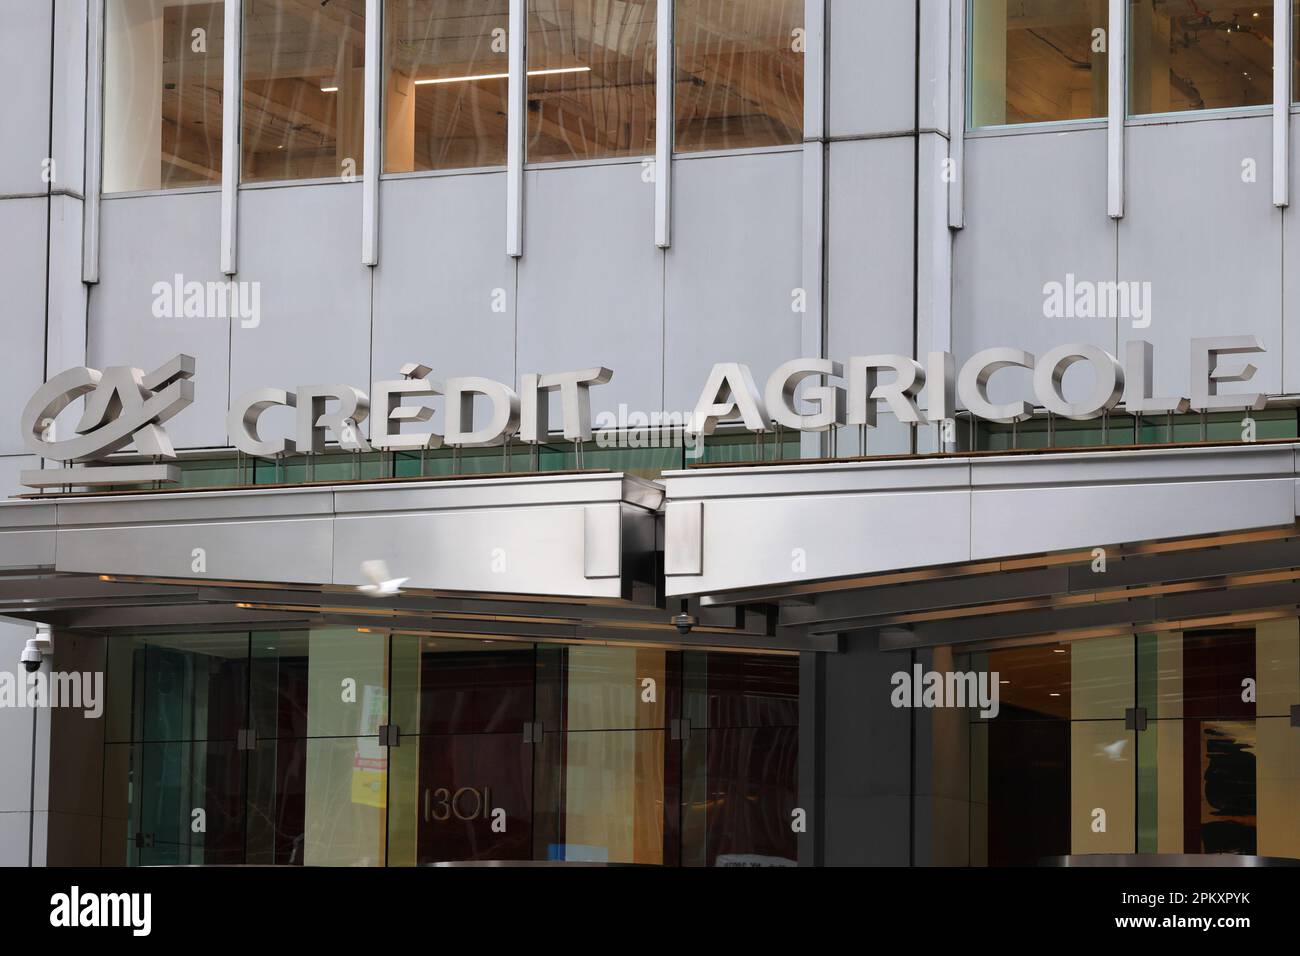 Le siège social de Credit Agricole Corporate & Investment Bank aux États-Unis est situé à New York. Crédit agricole CIB est une banque commerciale française Banque D'Images